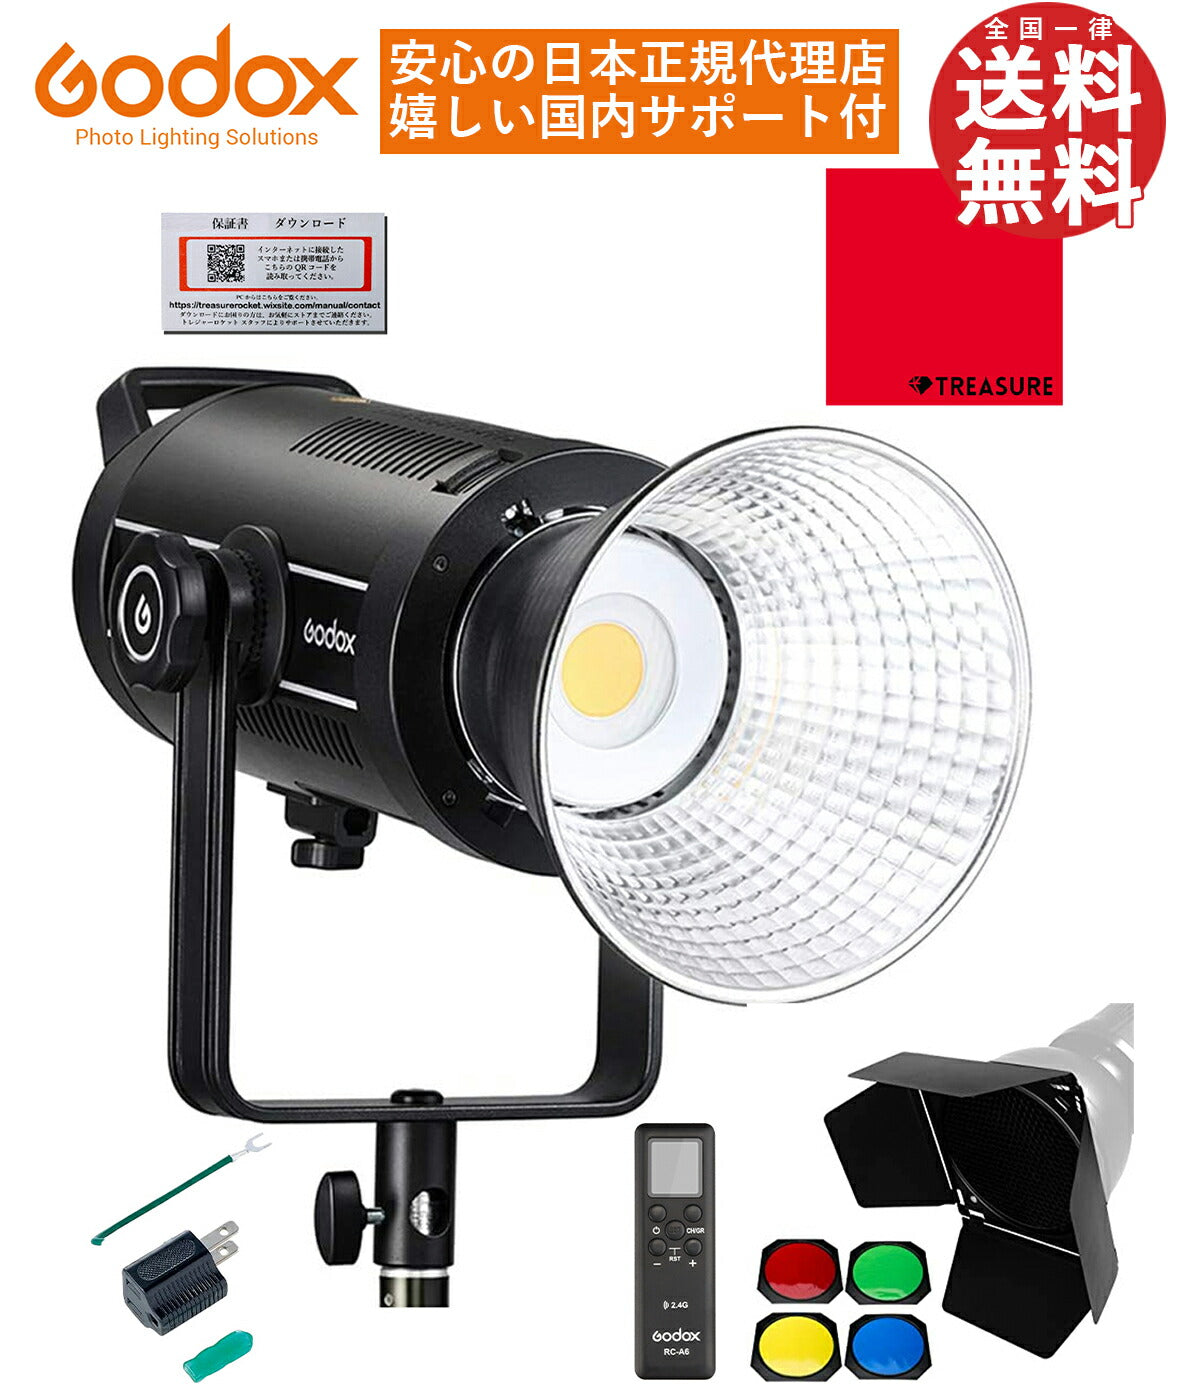 国内正規代理店] Godox SL-150Wii 58000lux 定常光LEDライト ビデオ